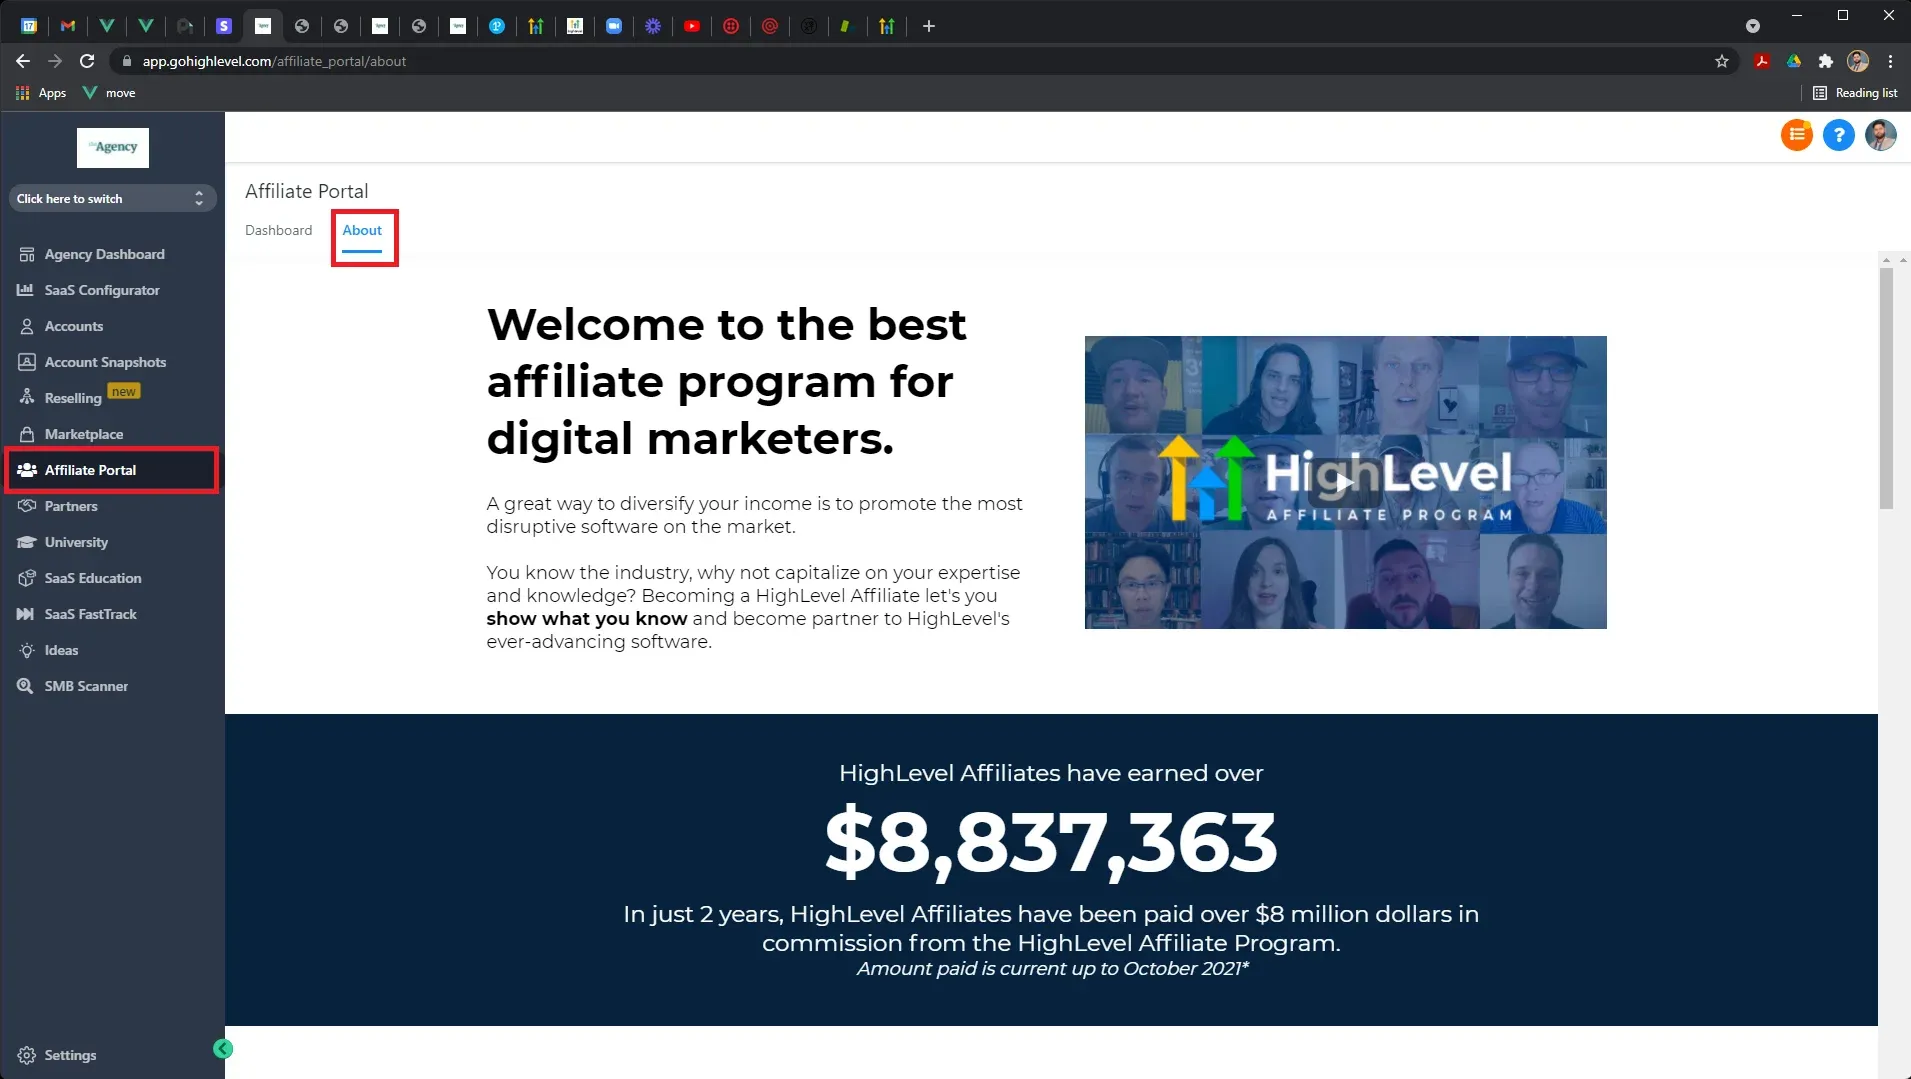 GoHighLevel affiliate program